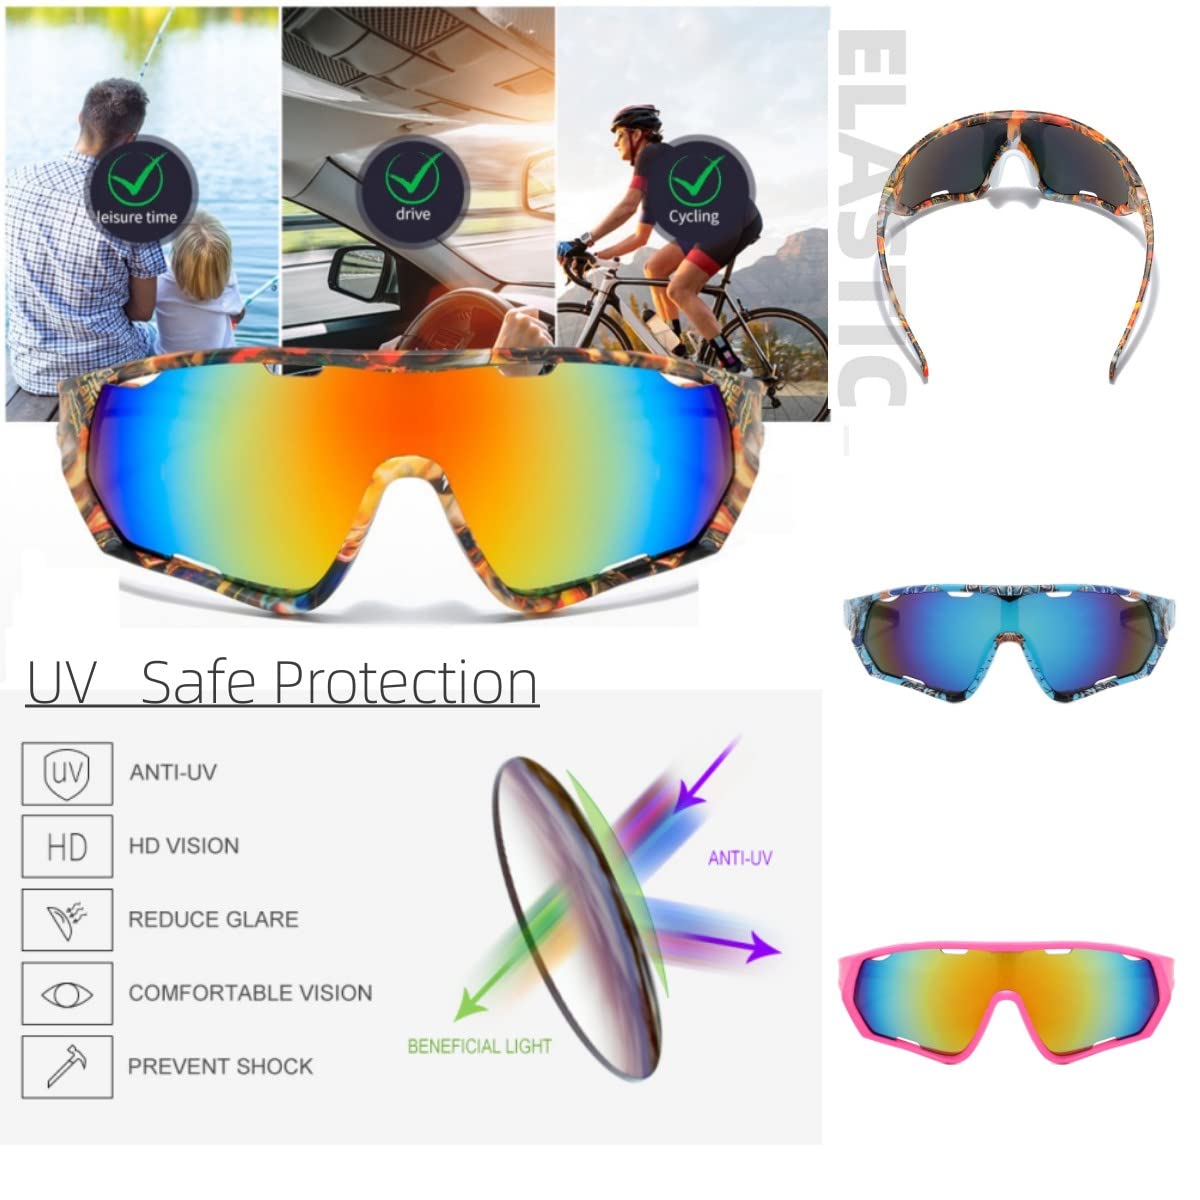 YUHANOER Sport Sunglasses Cycling Driving Fishing Baseball Running Glasses for Men Women,UV400 Glasses (Cycling pink)